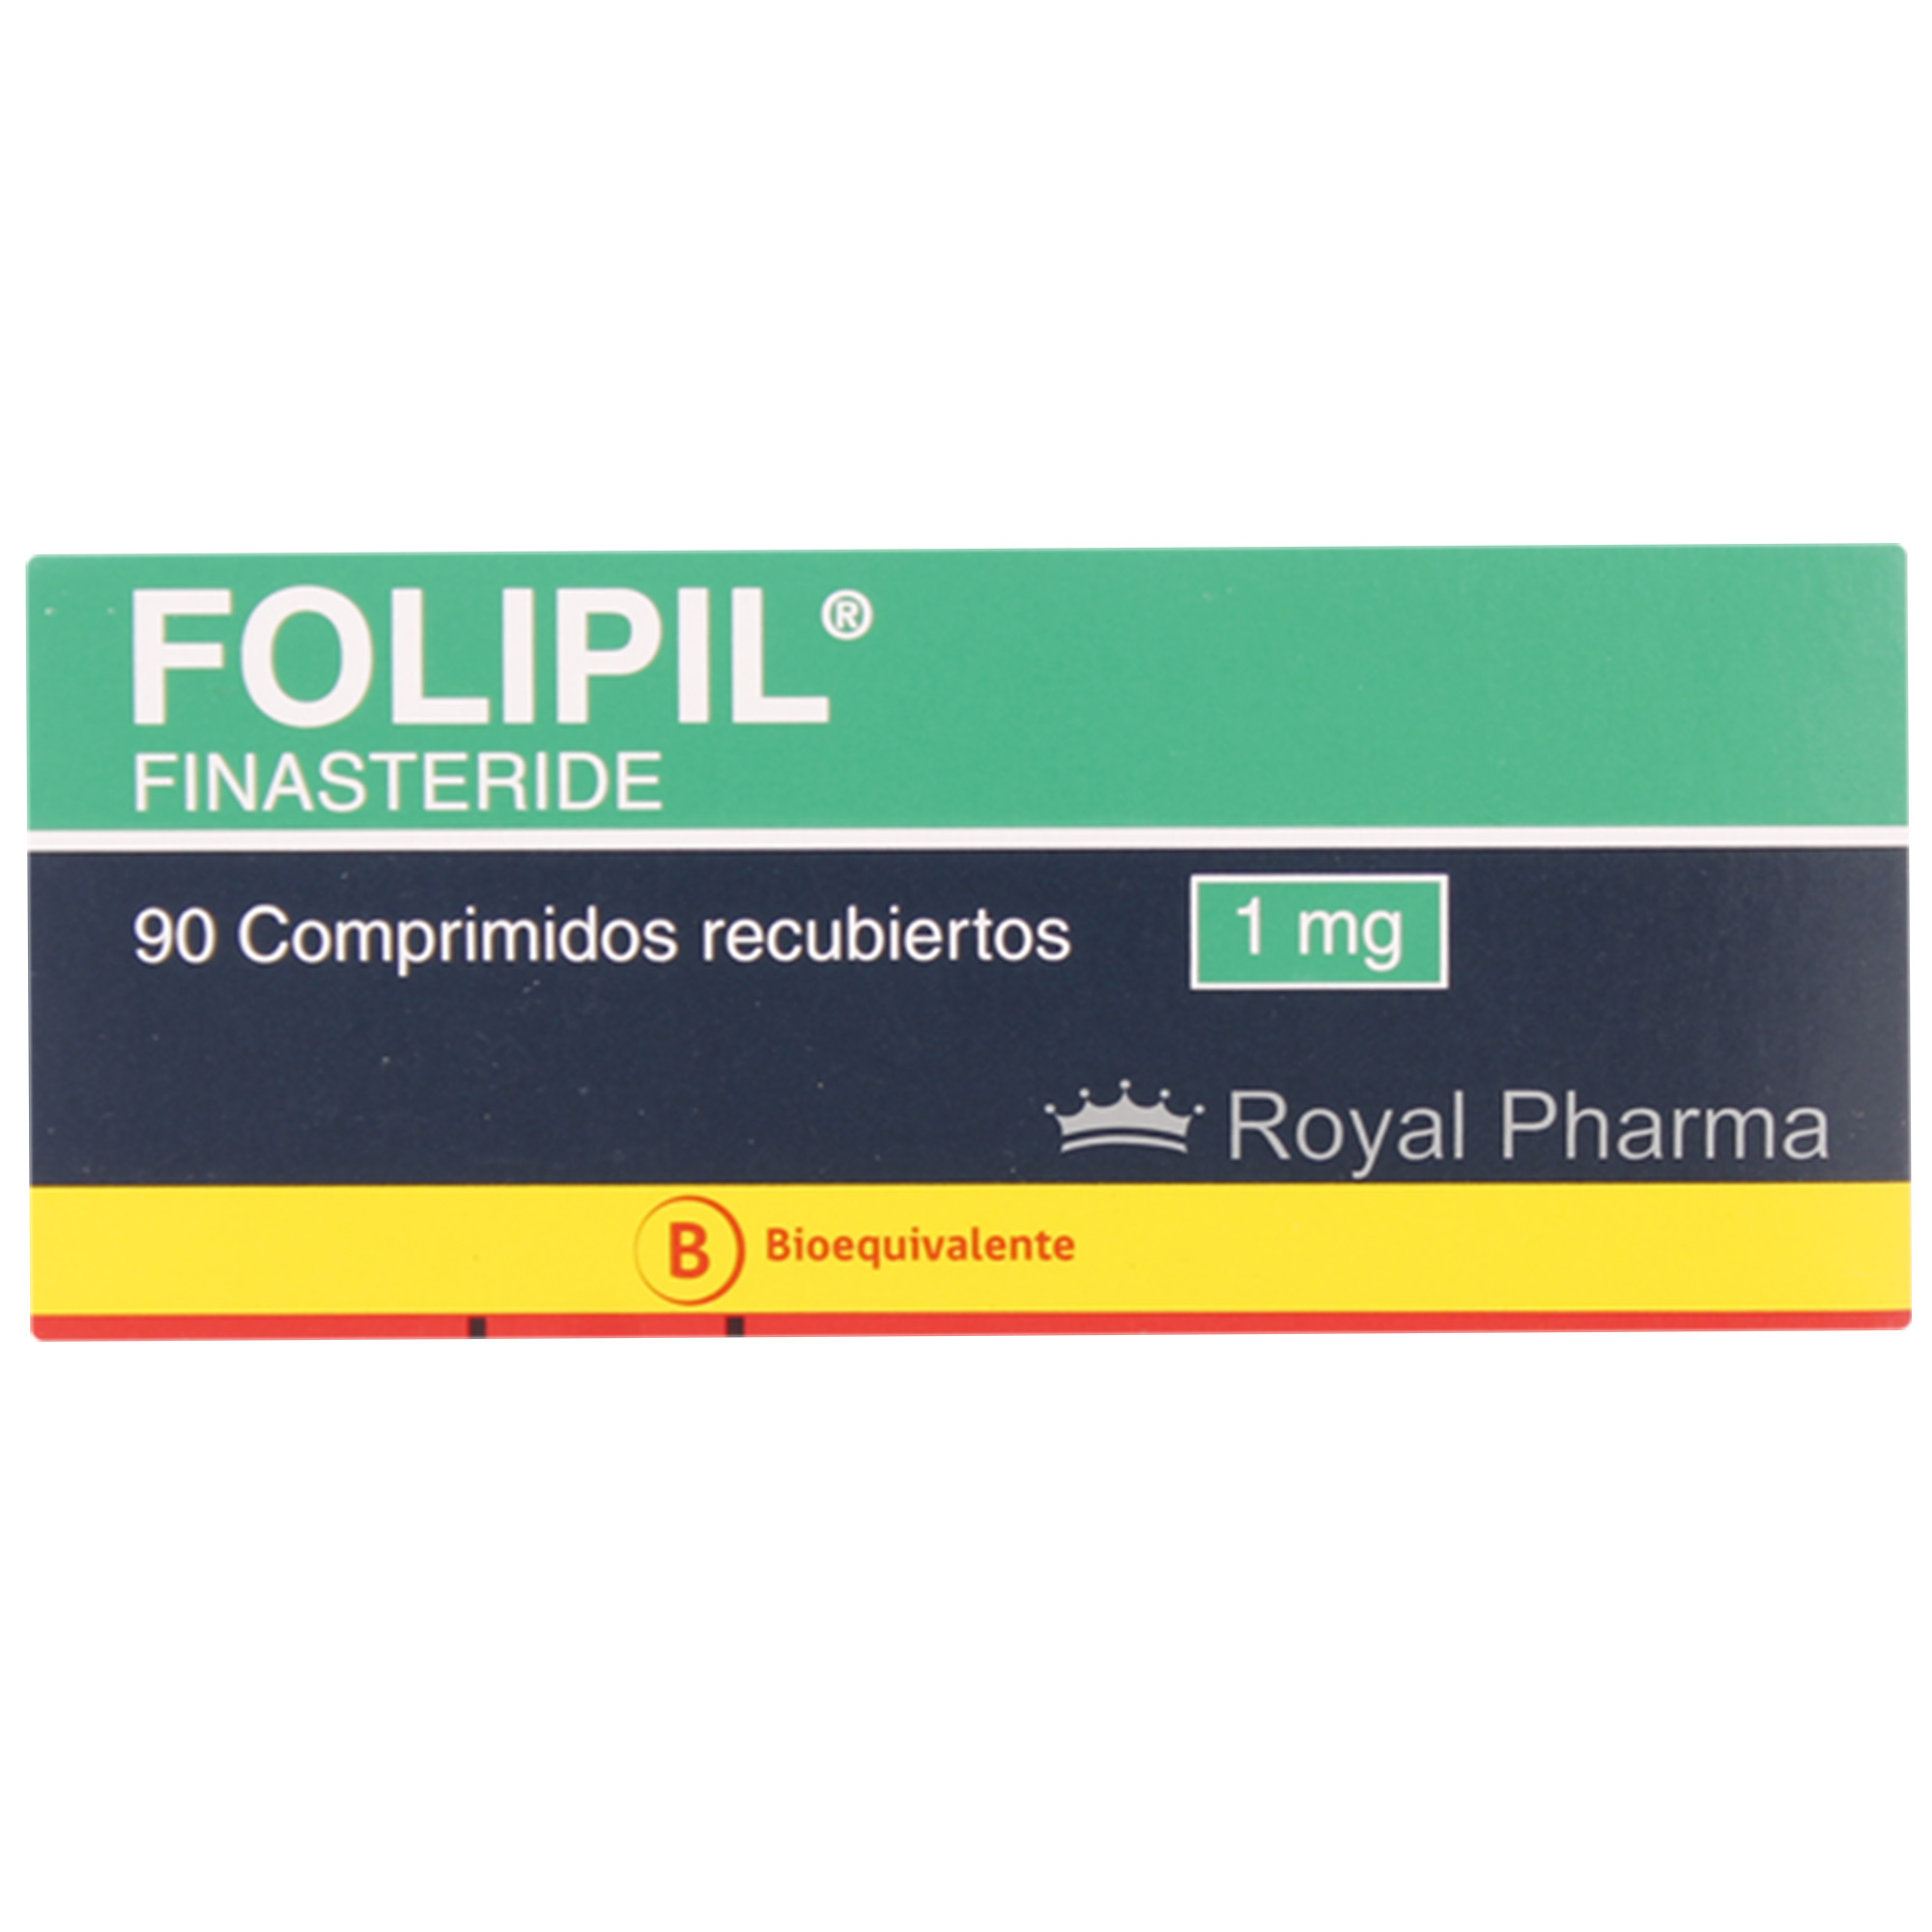 Folipil Finasteride 1 mg 90 Comprimidos Recubiertos